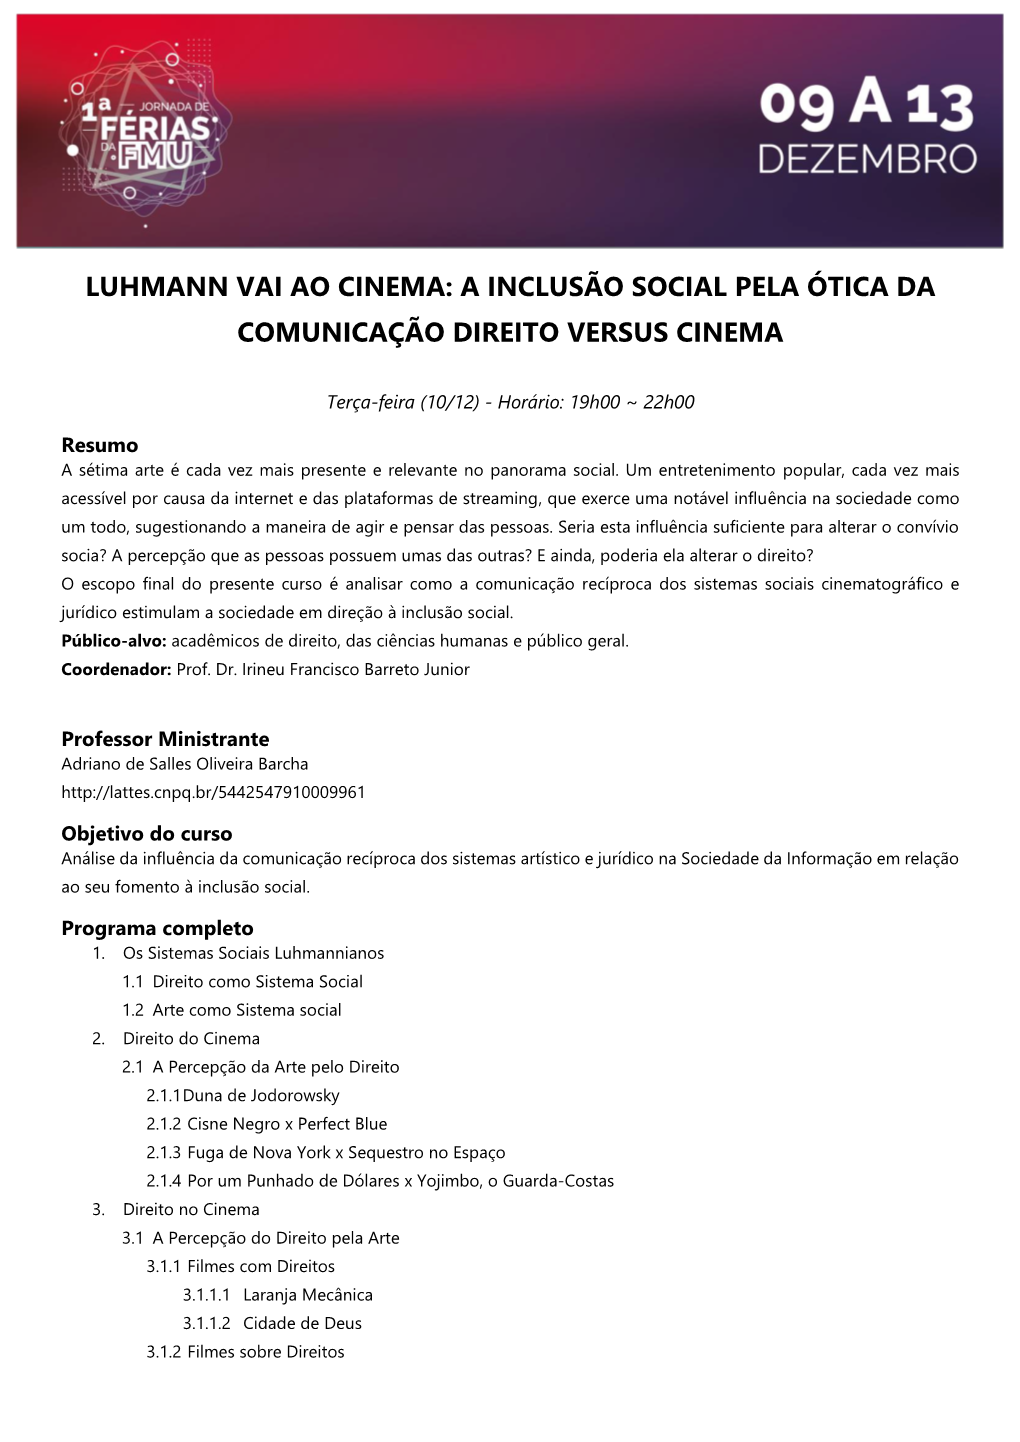 Luhmann Vai Ao Cinema: a Inclusão Social Pela Ótica Da Comunicação Direito Versus Cinema